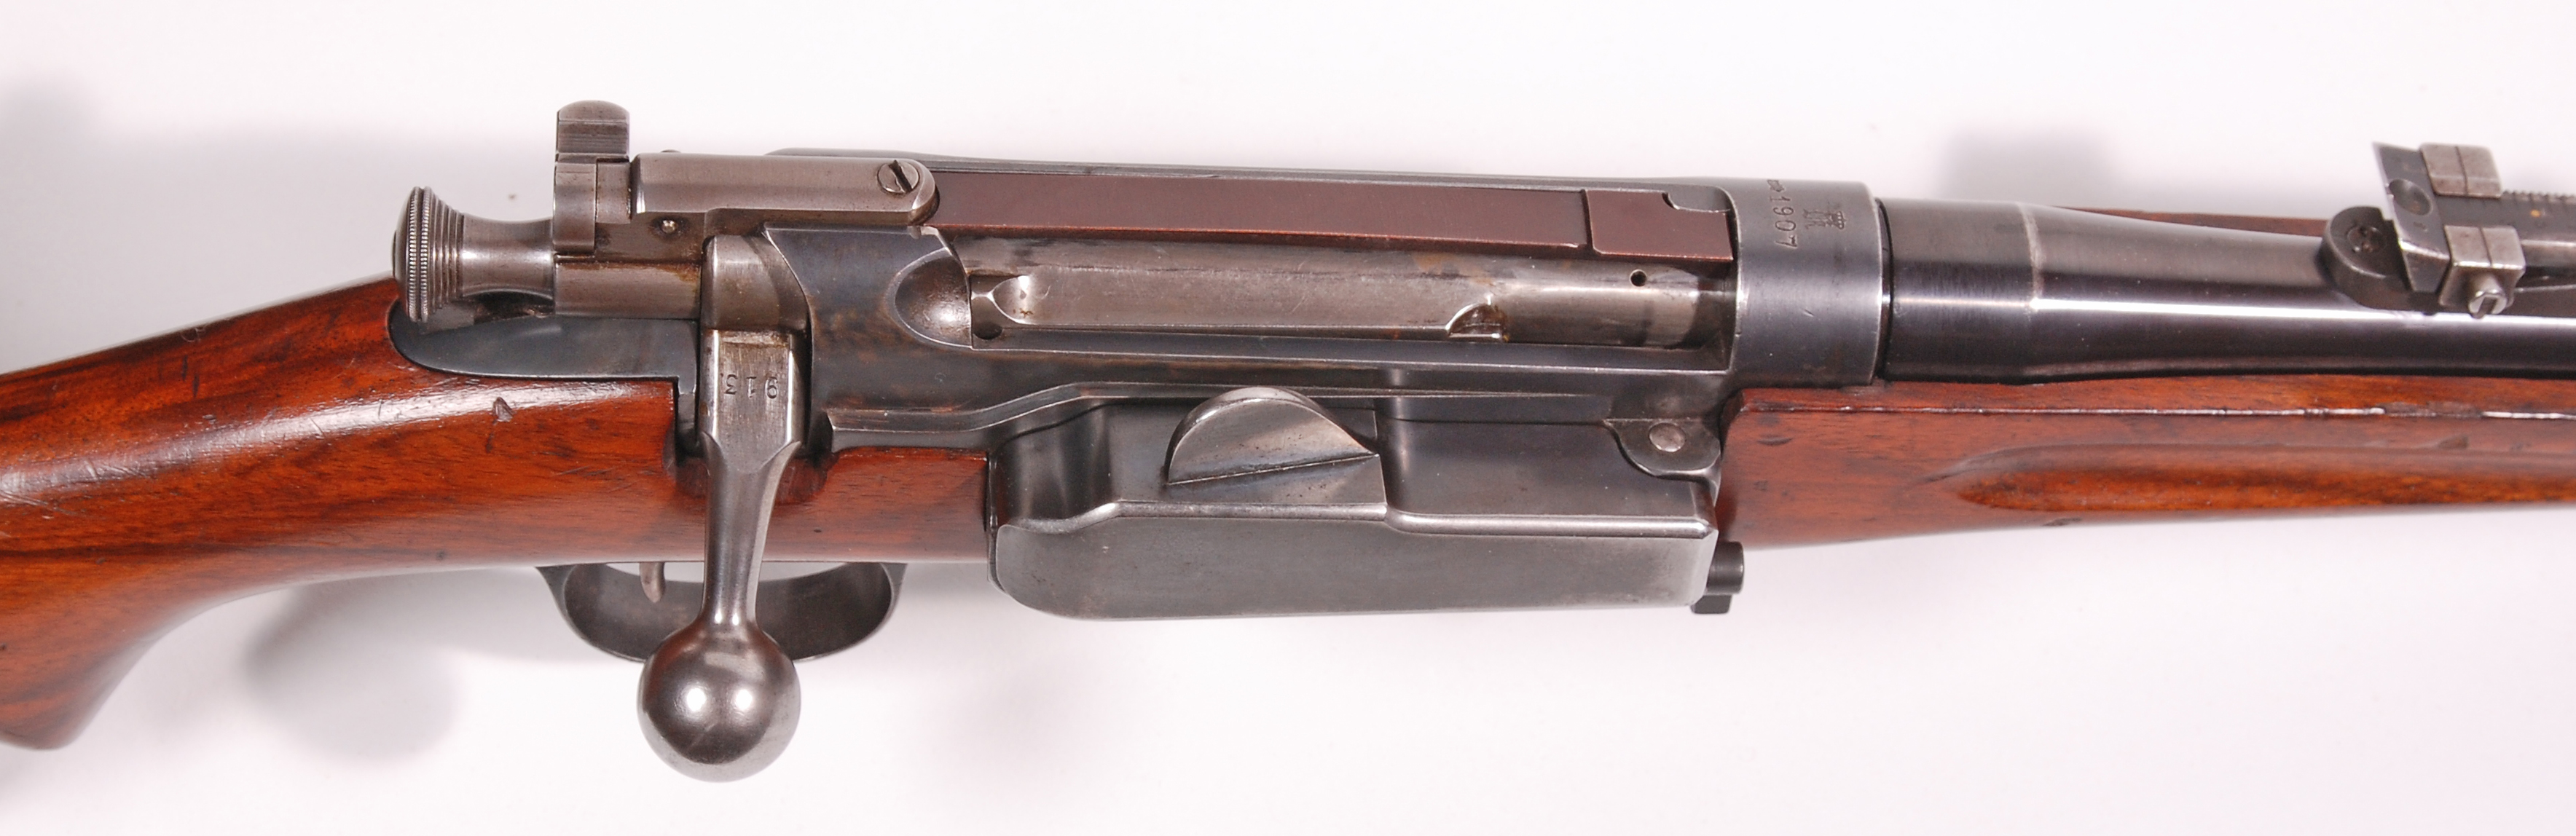 ./guns/rifle/bilder/Rifle-Kongsberg-Krag-M1906-913-3.jpg